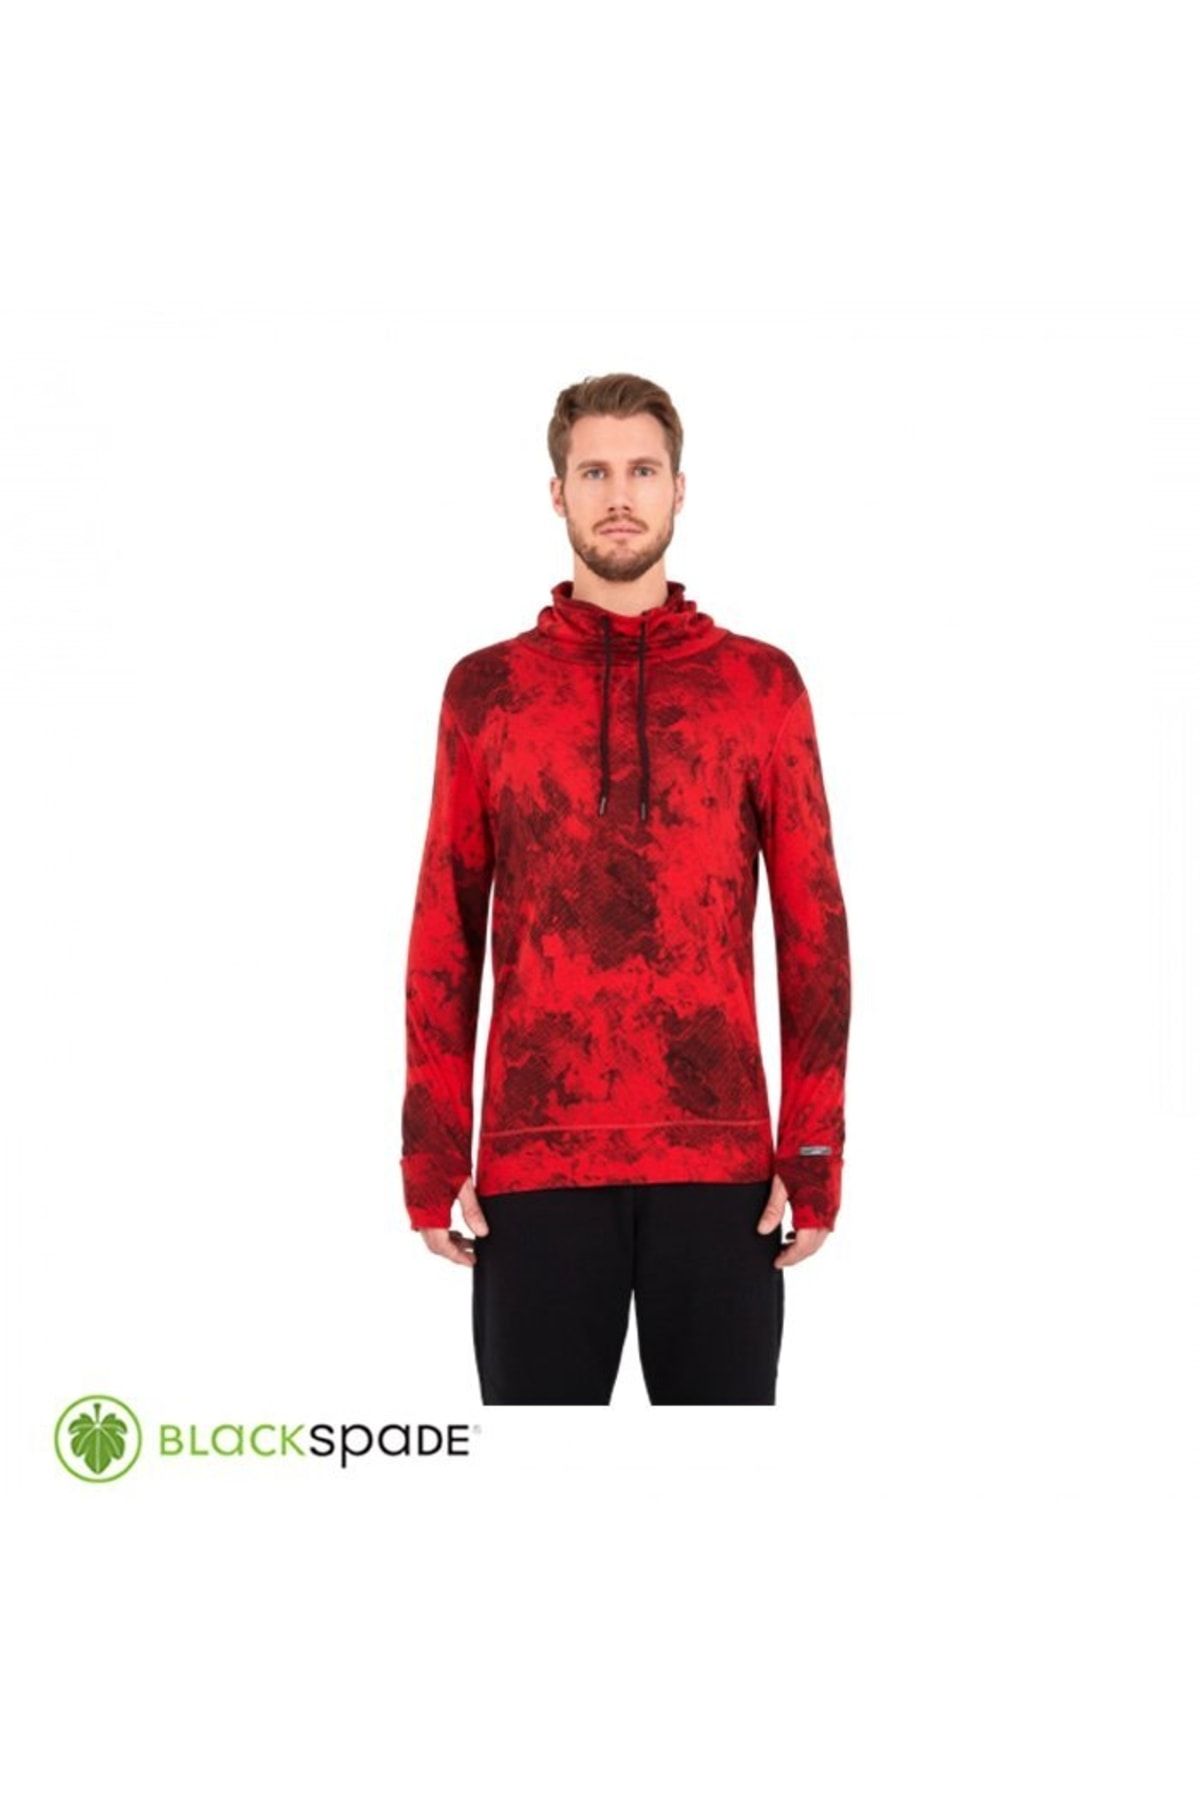 Blackspade Unisex Sweatshirt Kırmızı m